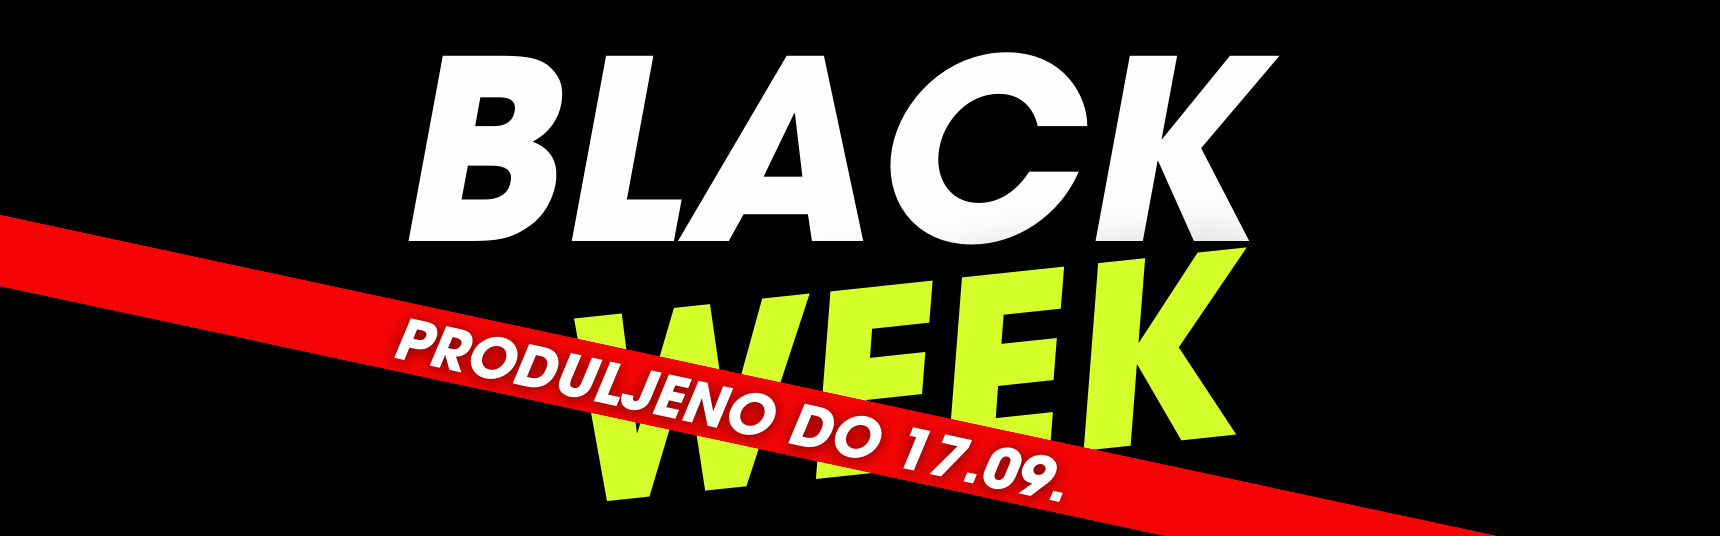 BLACK WEEK - 04.09-10.09.